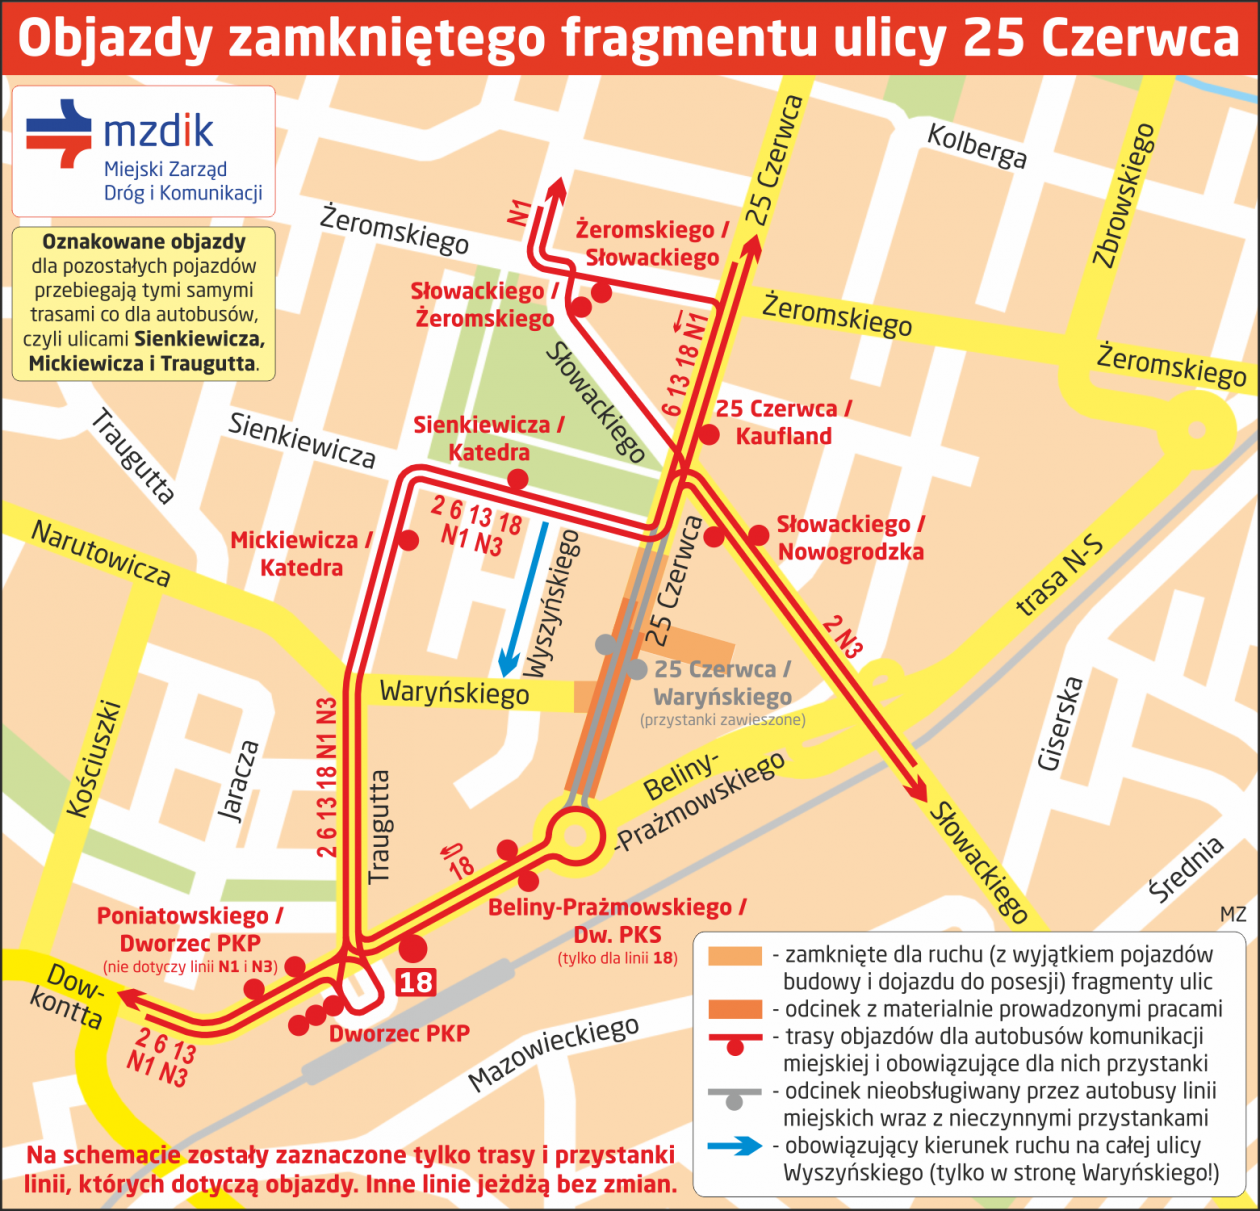 Ul. 25 Czerwca otwarta - zmiany w komunikacji miejskiej